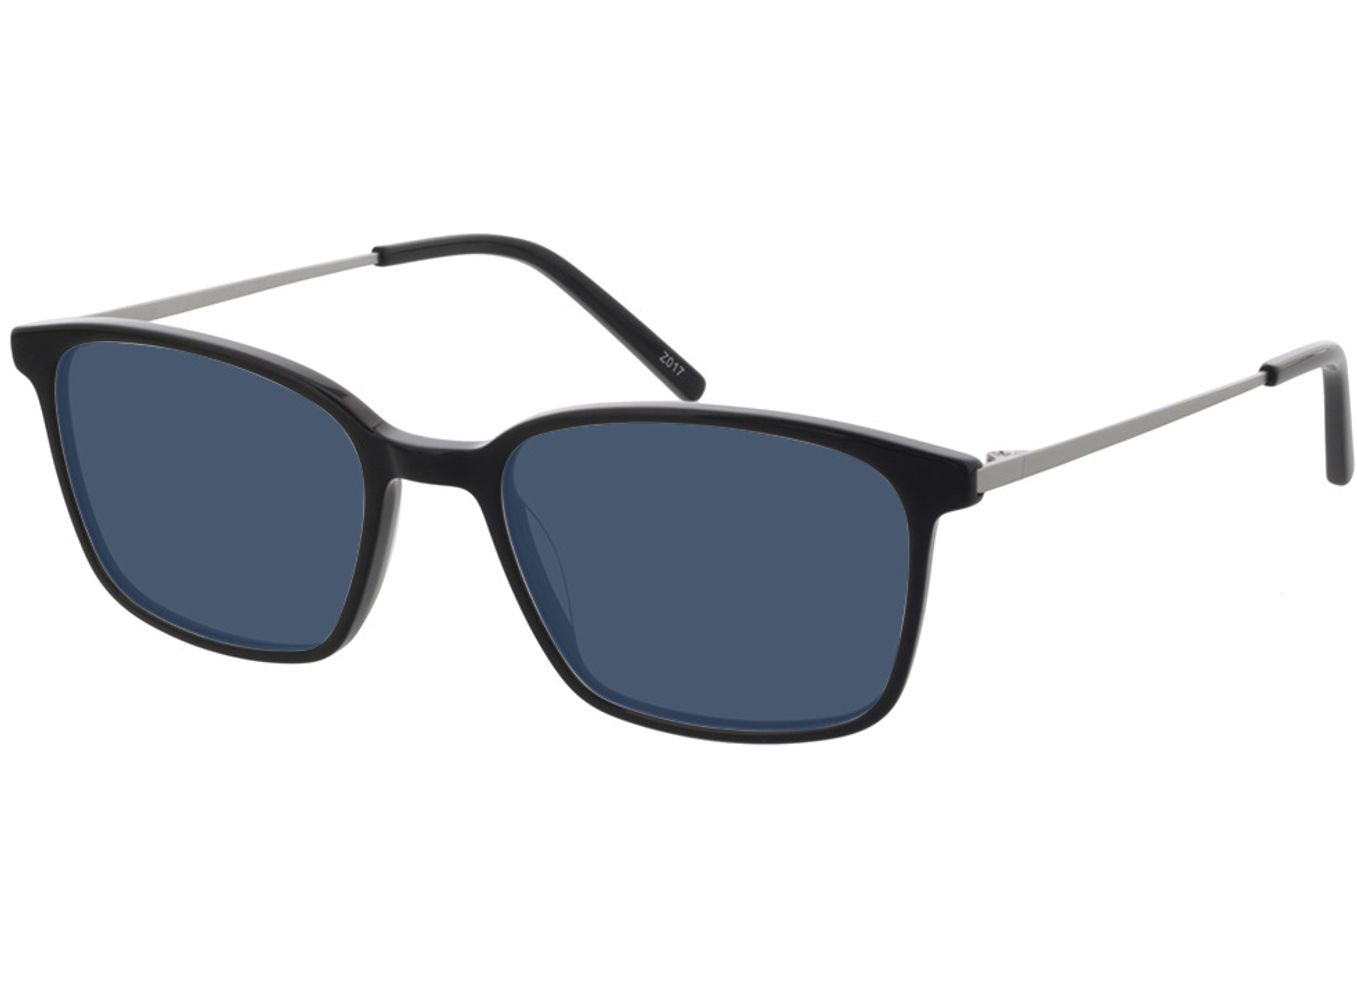 Melle - schwarz/silber Sonnenbrille ohne Sehstärke, Vollrand, Rechteckig von Brille24 Collection